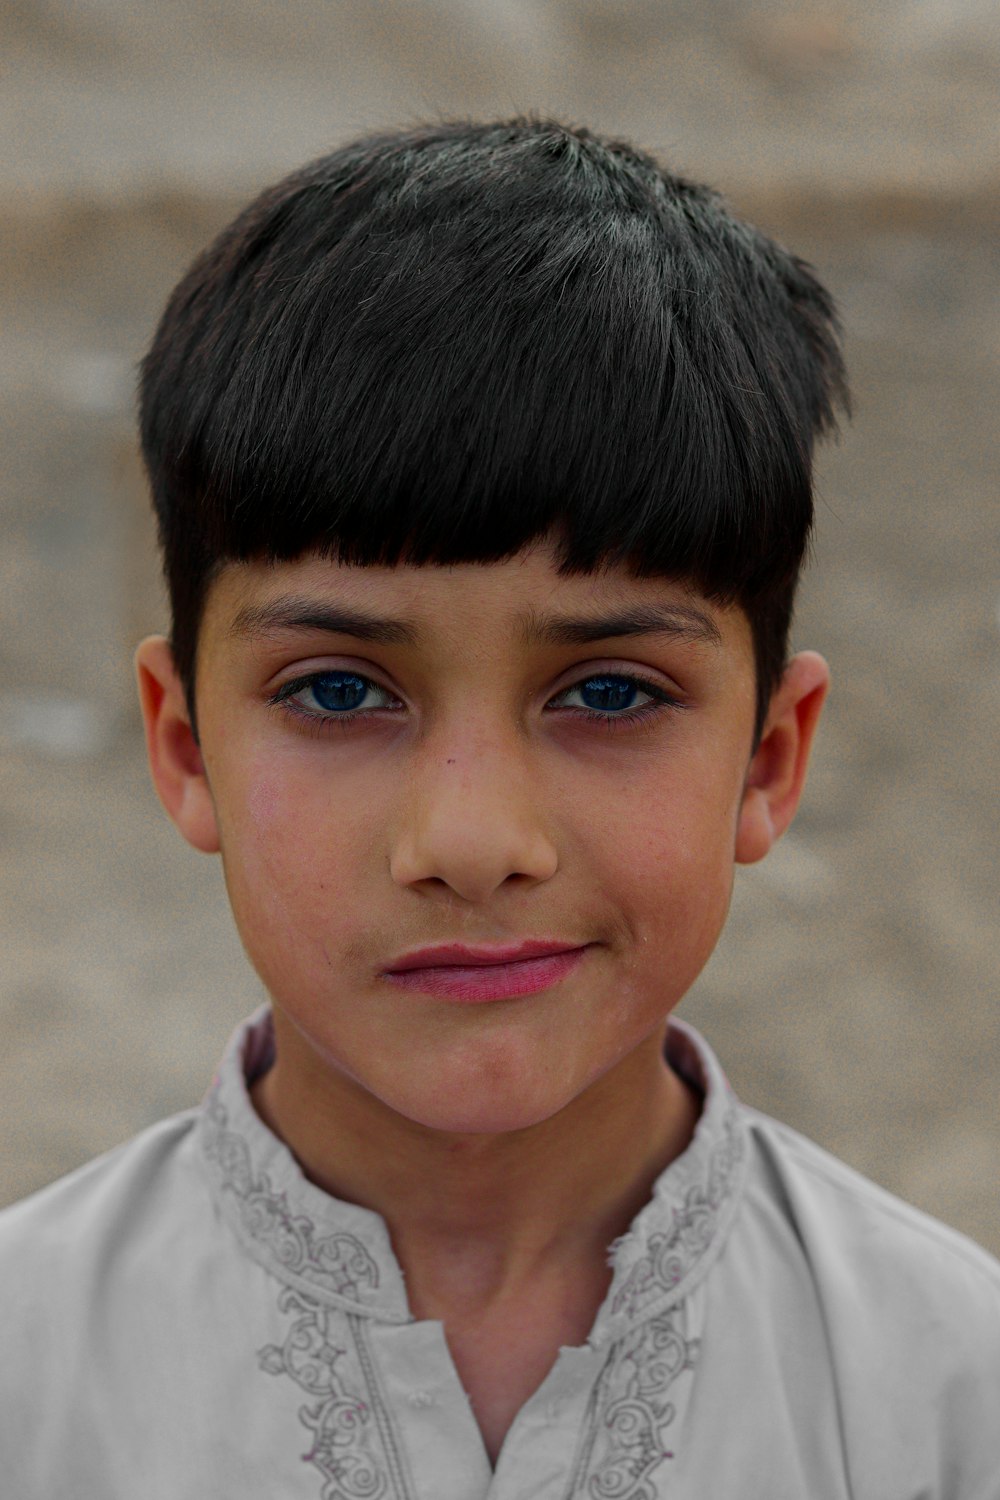 a boy with blue eyes